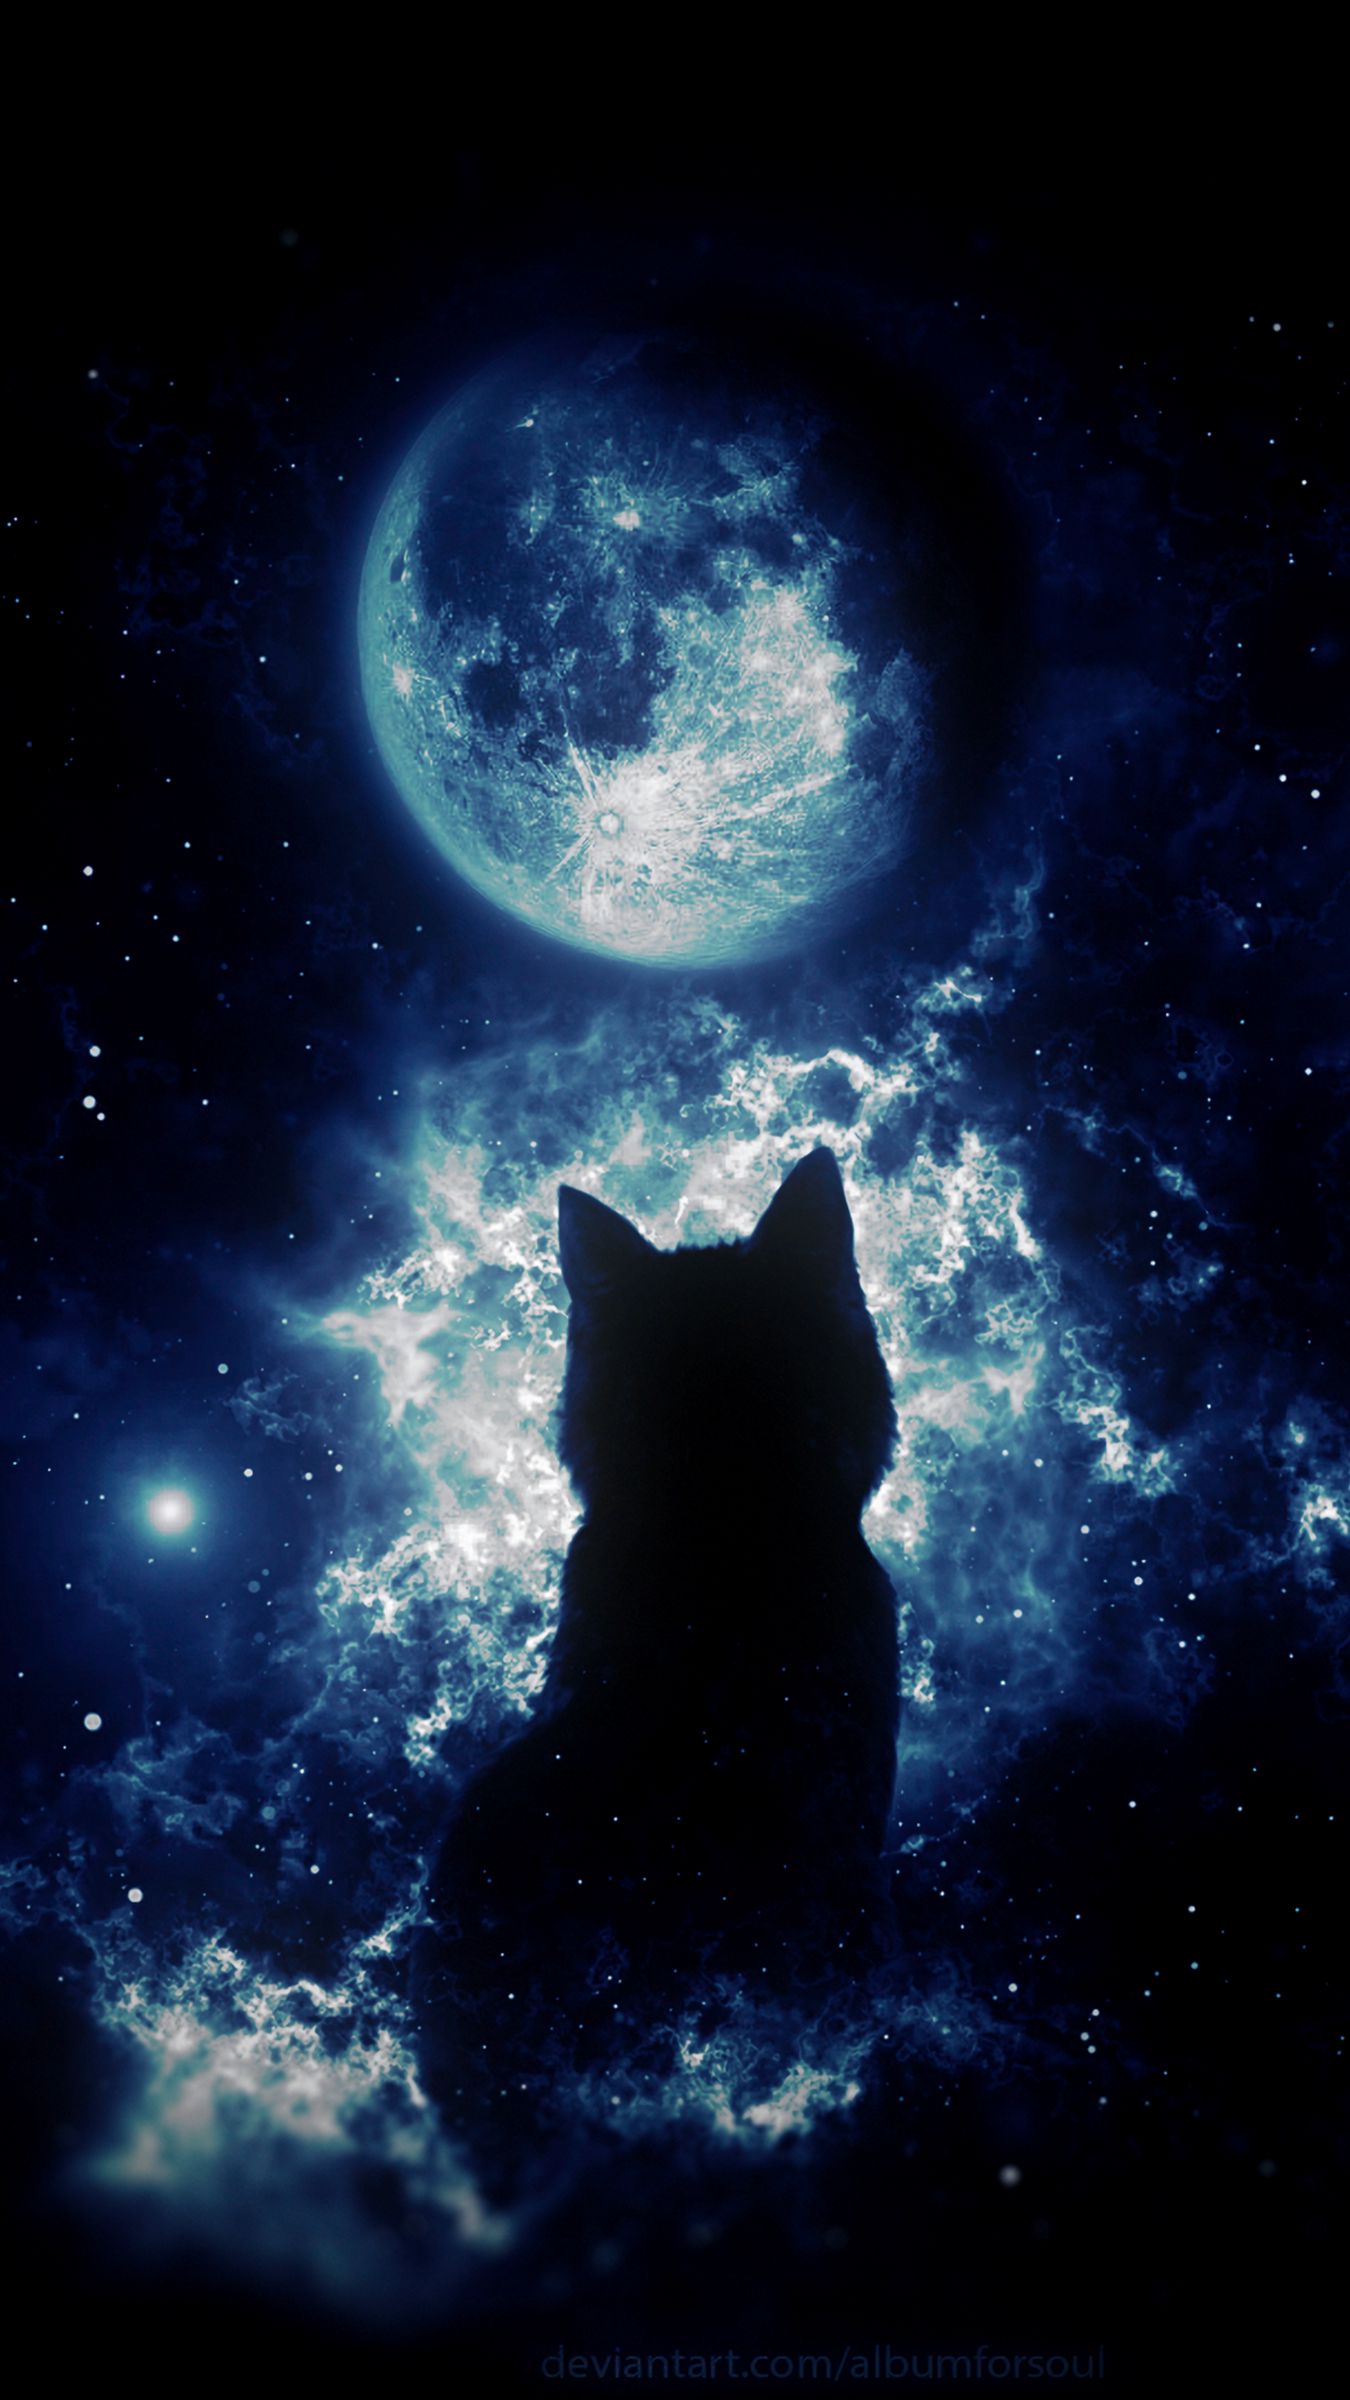 Nhìn ngắm những hình ảnh về mèo đen xinh đẹp như thật sẽ khiến bạn đắm chìm vào không gian này mãi mãi. Các tư thế ngủ, những cái nhìn ngớ người, đôi tai tai cùng với bộ lông đen bóng sẽ khiến bạn chú ý tới hình ảnh mèo đen ngay lập tức. 